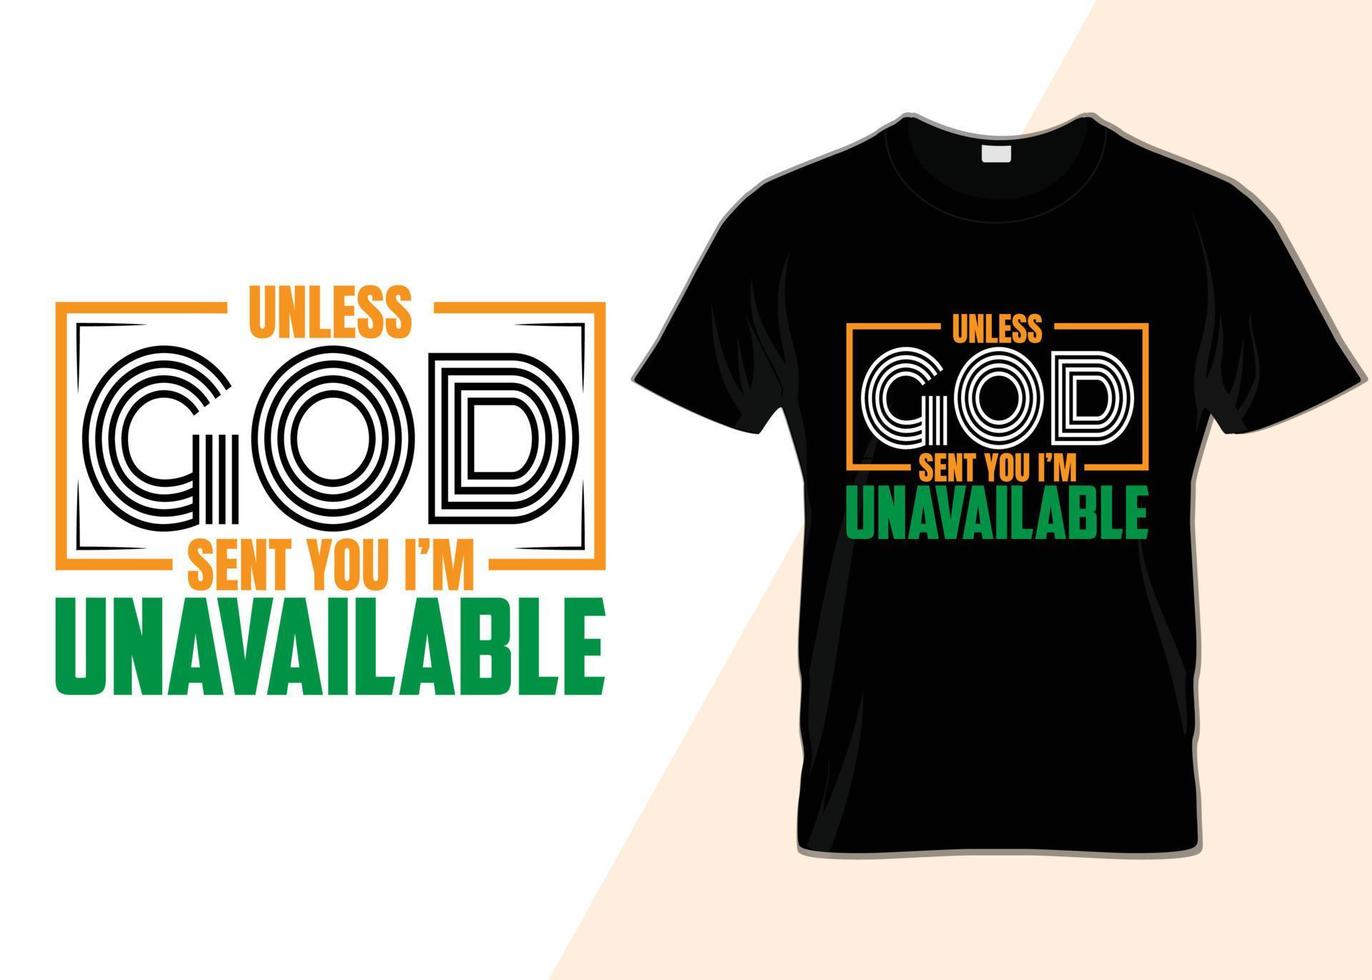 såvida inte Gud skickade du jag är inte tillgänglig t-shirt design vektor